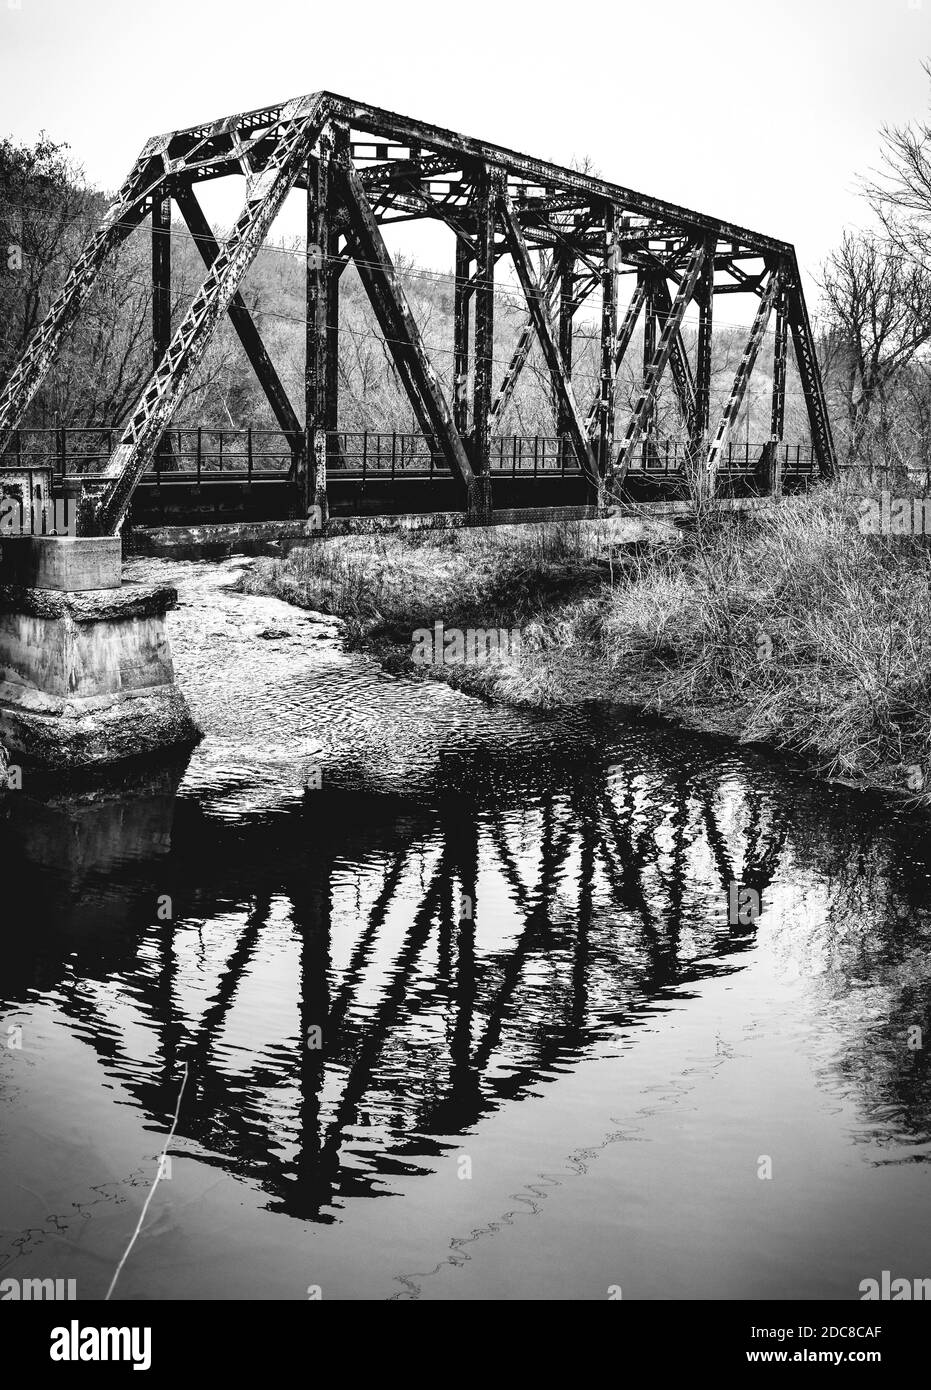 ponte ferroviario d'epoca in metallo e acciaio nella campagna rurale Foto Stock